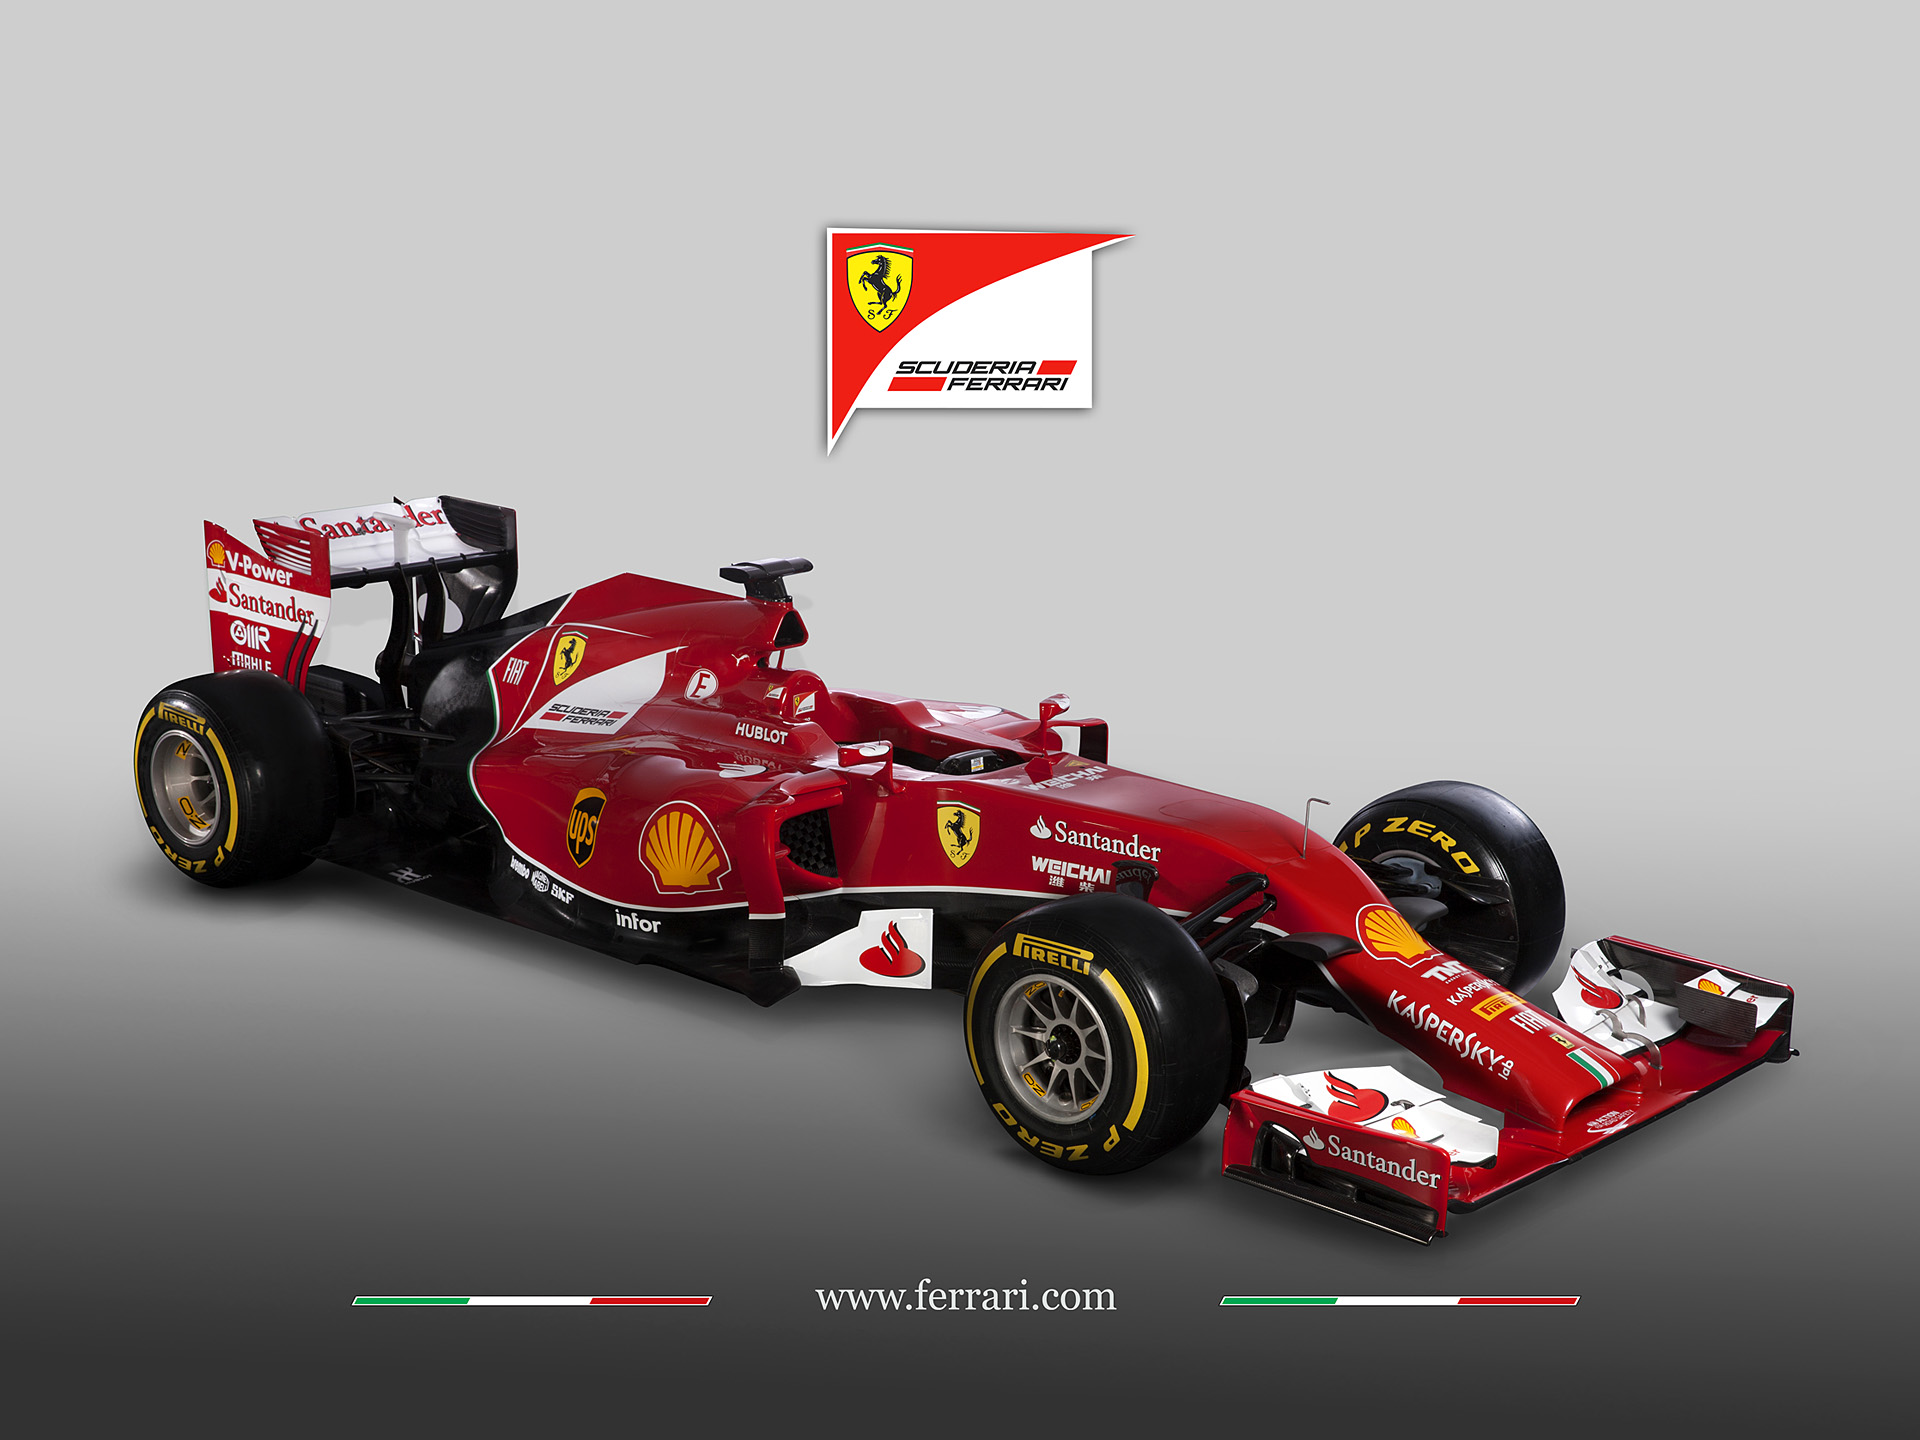  2014 Ferrari F14 T Wallpaper.